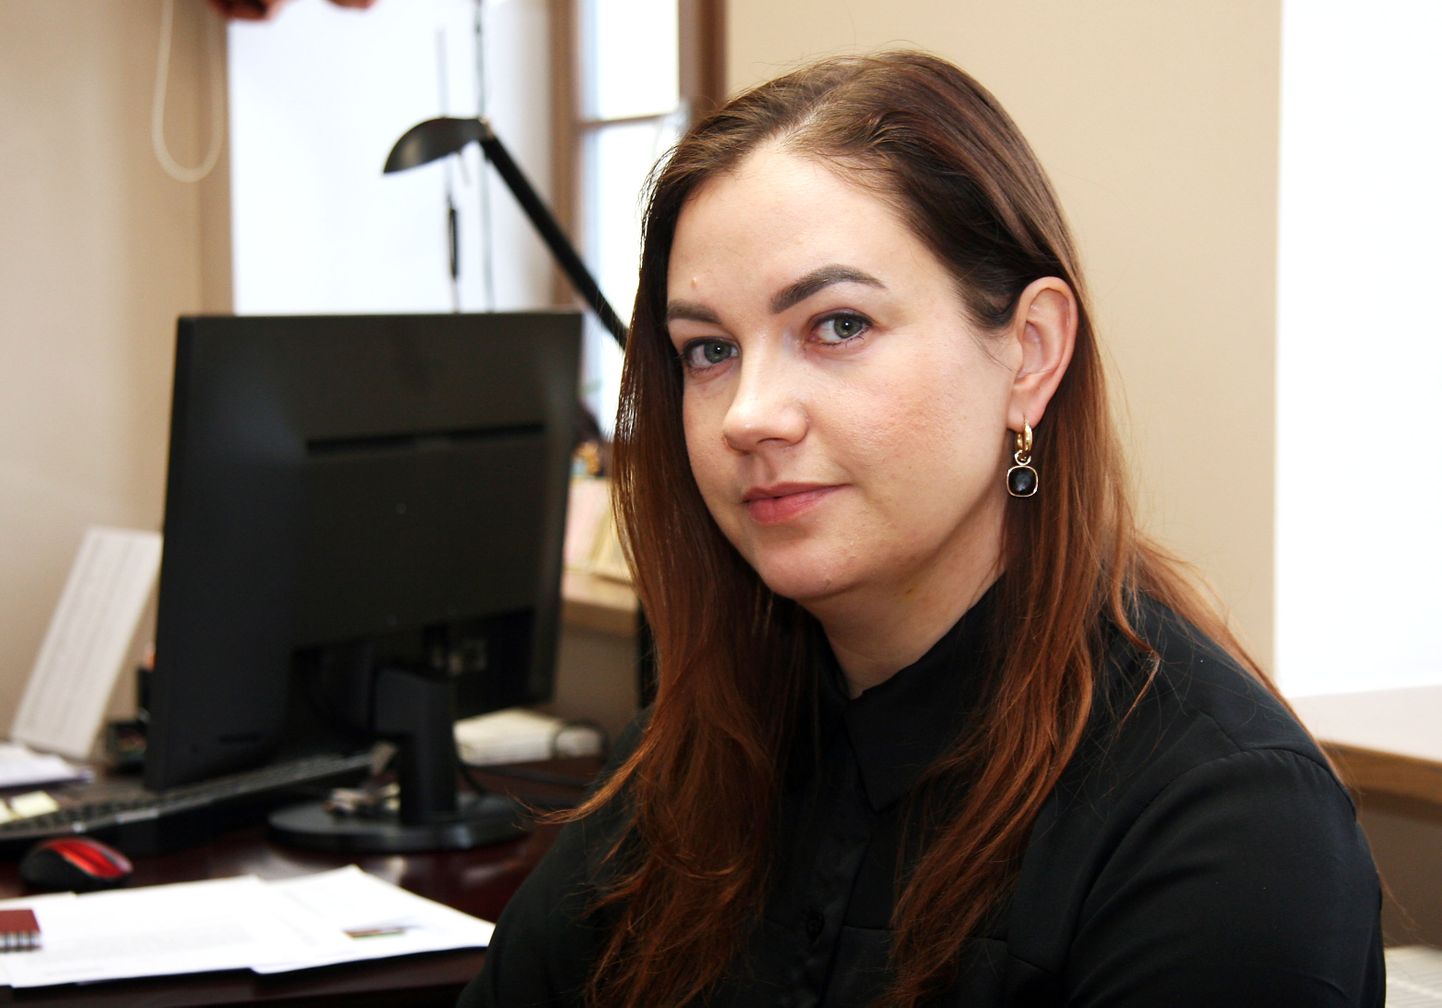 Kohtla-Järve praegune abilinnapea Evelyn Danilov oli NIkolai Ossipenko  ja tema firmadega seotud valimisliitude kampaaniajuht viimastel kohalikel valimistel nii Jõhvis kui ka Kohtla-Järvel.